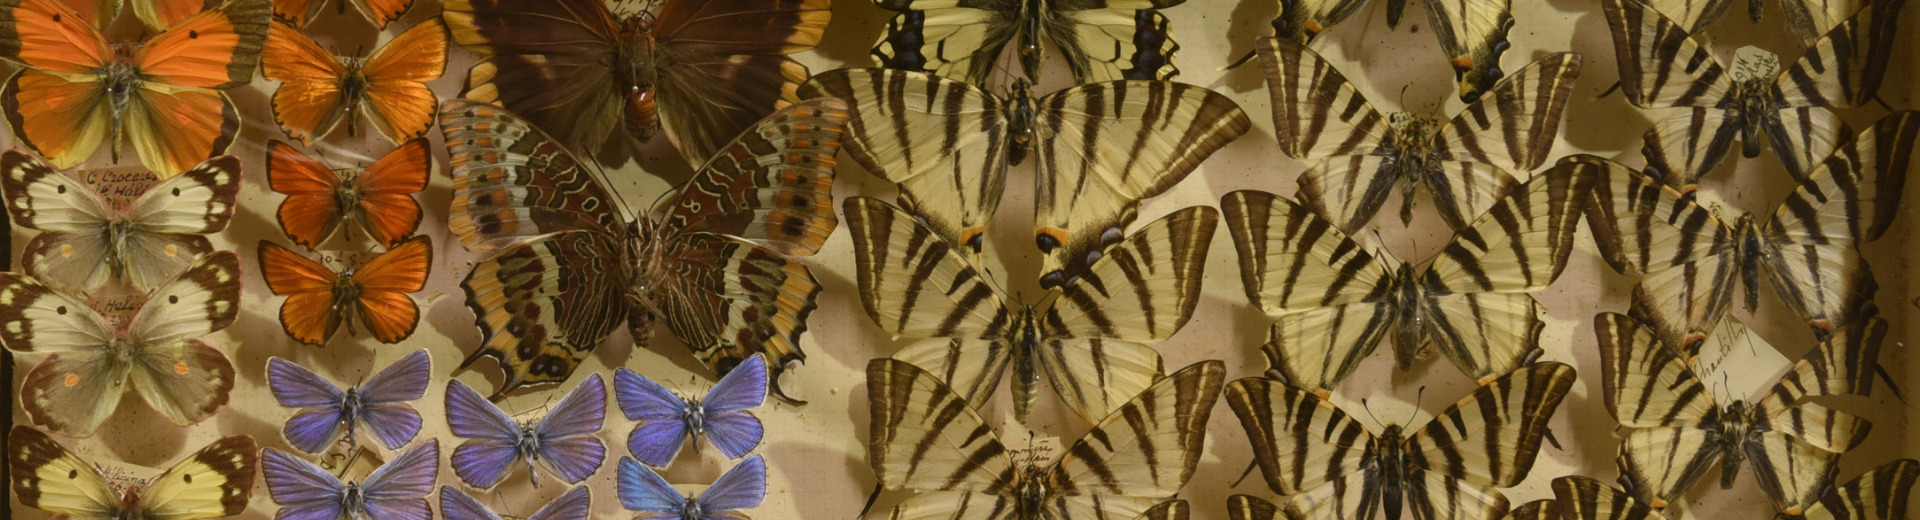 Collection entomologique du Musée Labenche de Brive - Tiroir de papillons